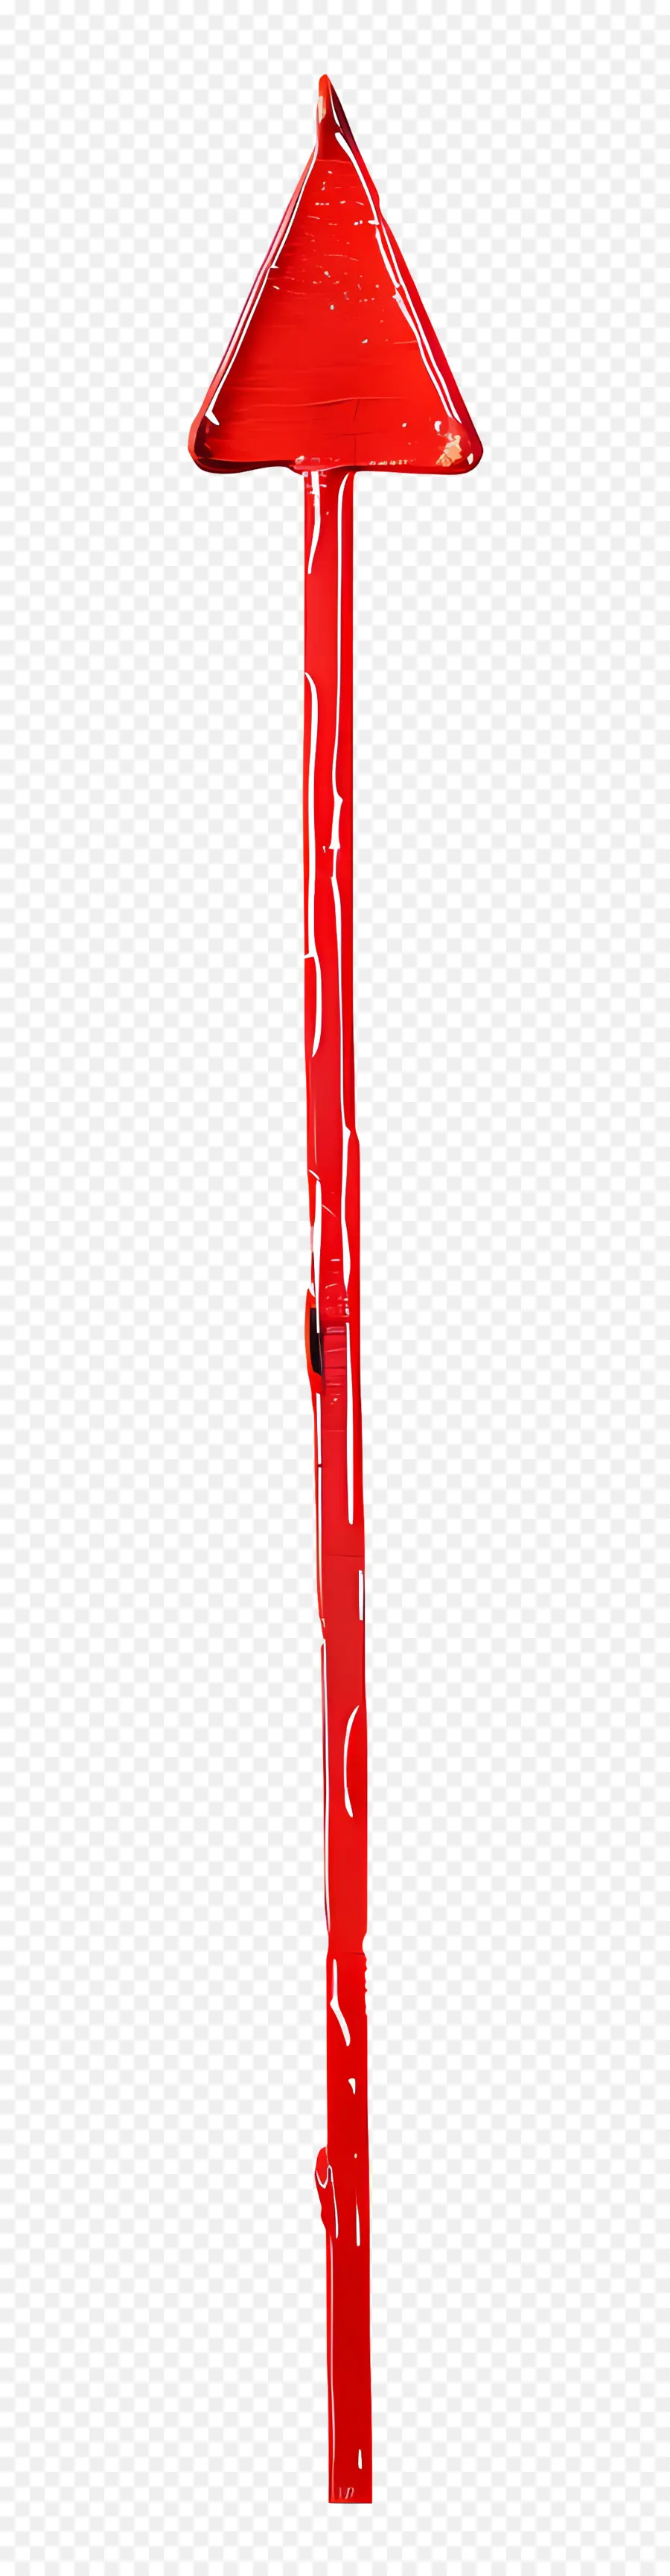 freccia rossa - Forma freccia rossa sullo sfondo nero